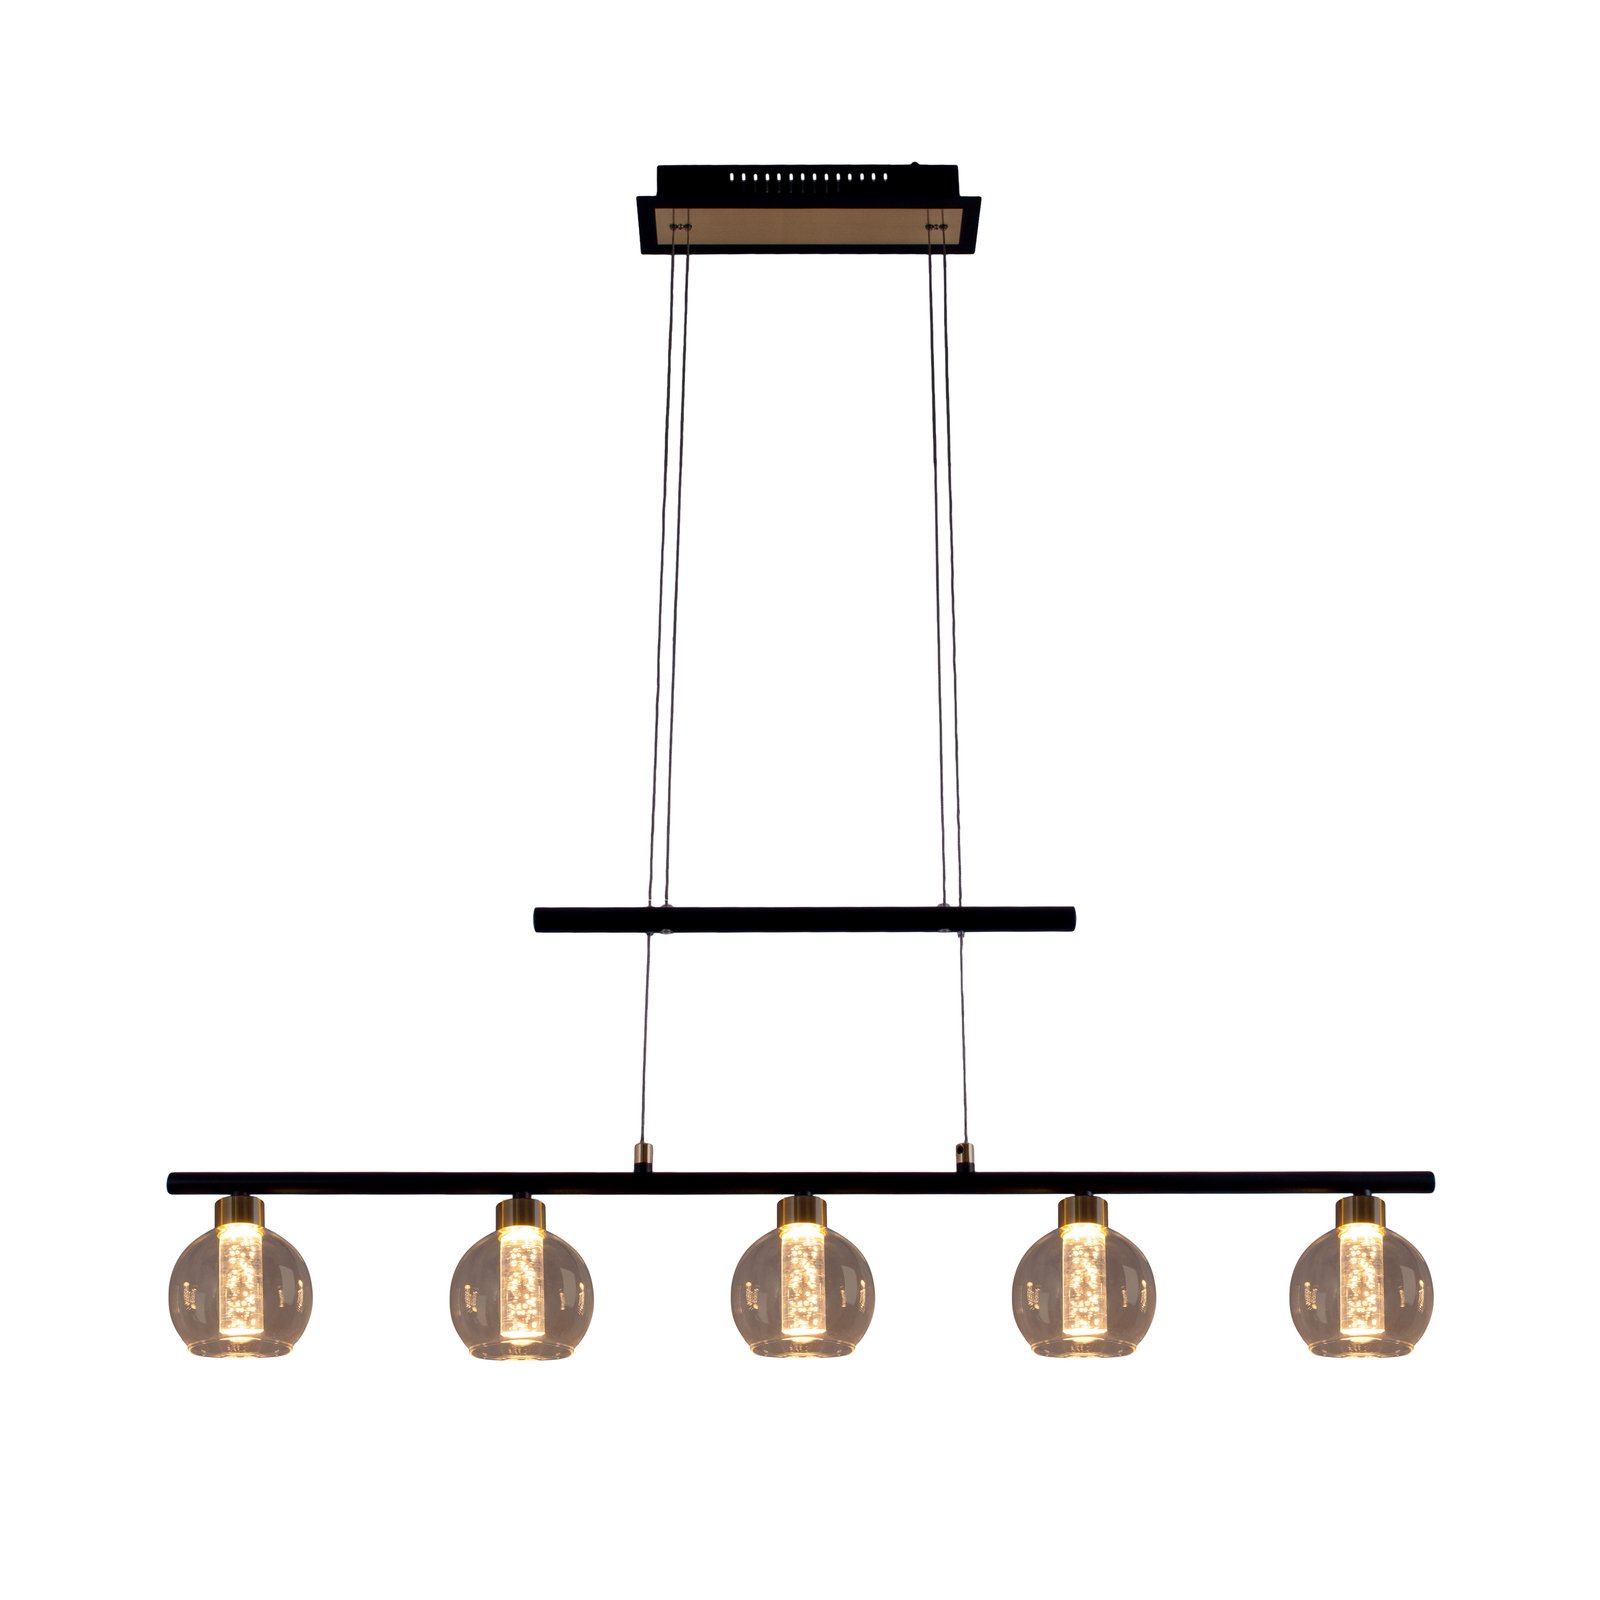 LED-riippuvalaisin Brass 5-lamppuinen korkeussäätö